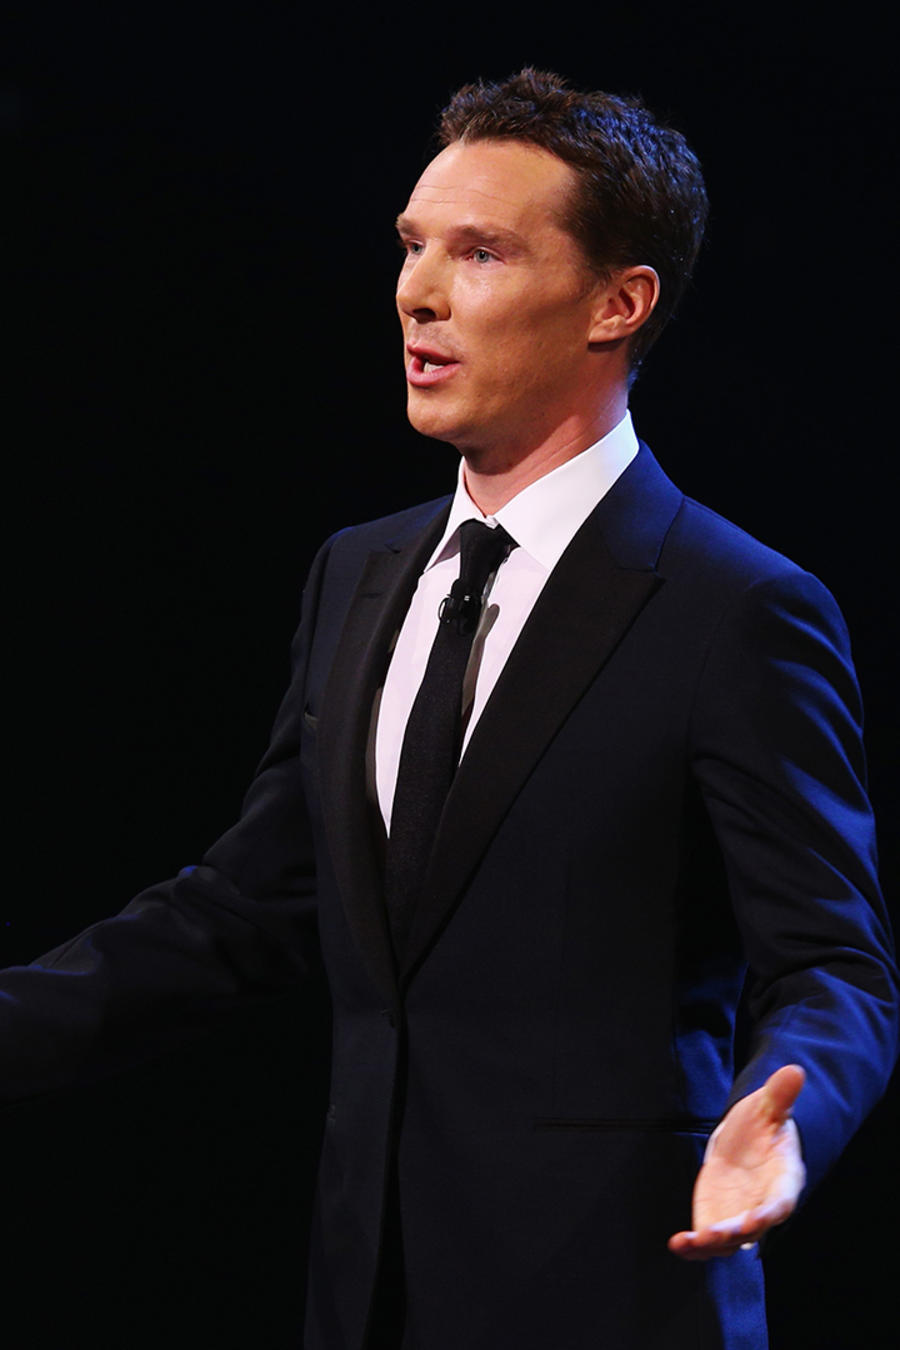 Benedict Cumberbatch le ruega a sus fans que dejen de grabarle 